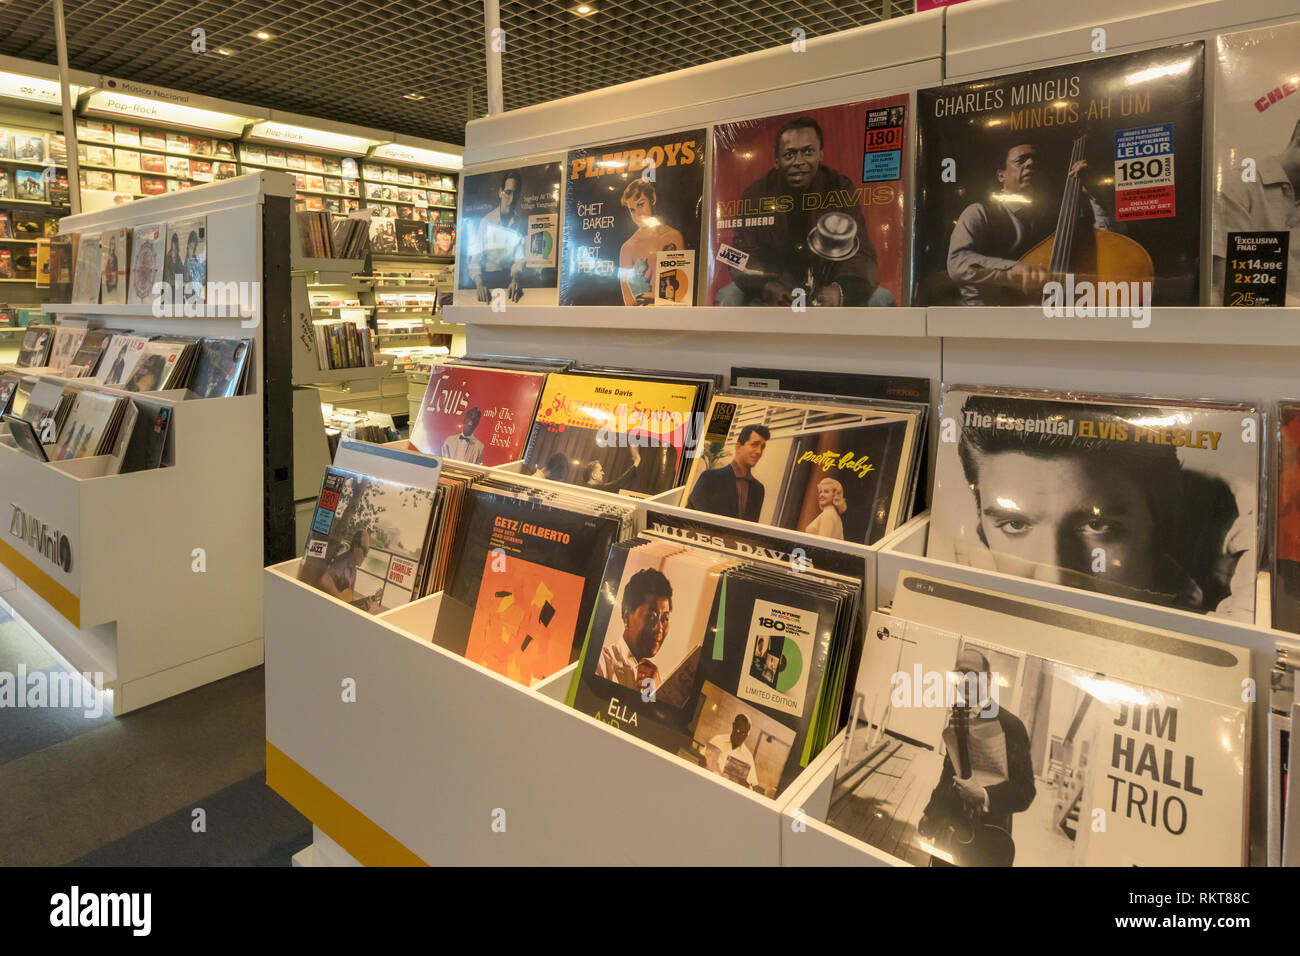 Anzeige von Vinyl LP's, oder Langspielplatten in Fnac Store in La Canada Shopping Centre, Marbella, Costa del Sol, Provinz Malaga, Spanien. Vinyl rec Stockfoto